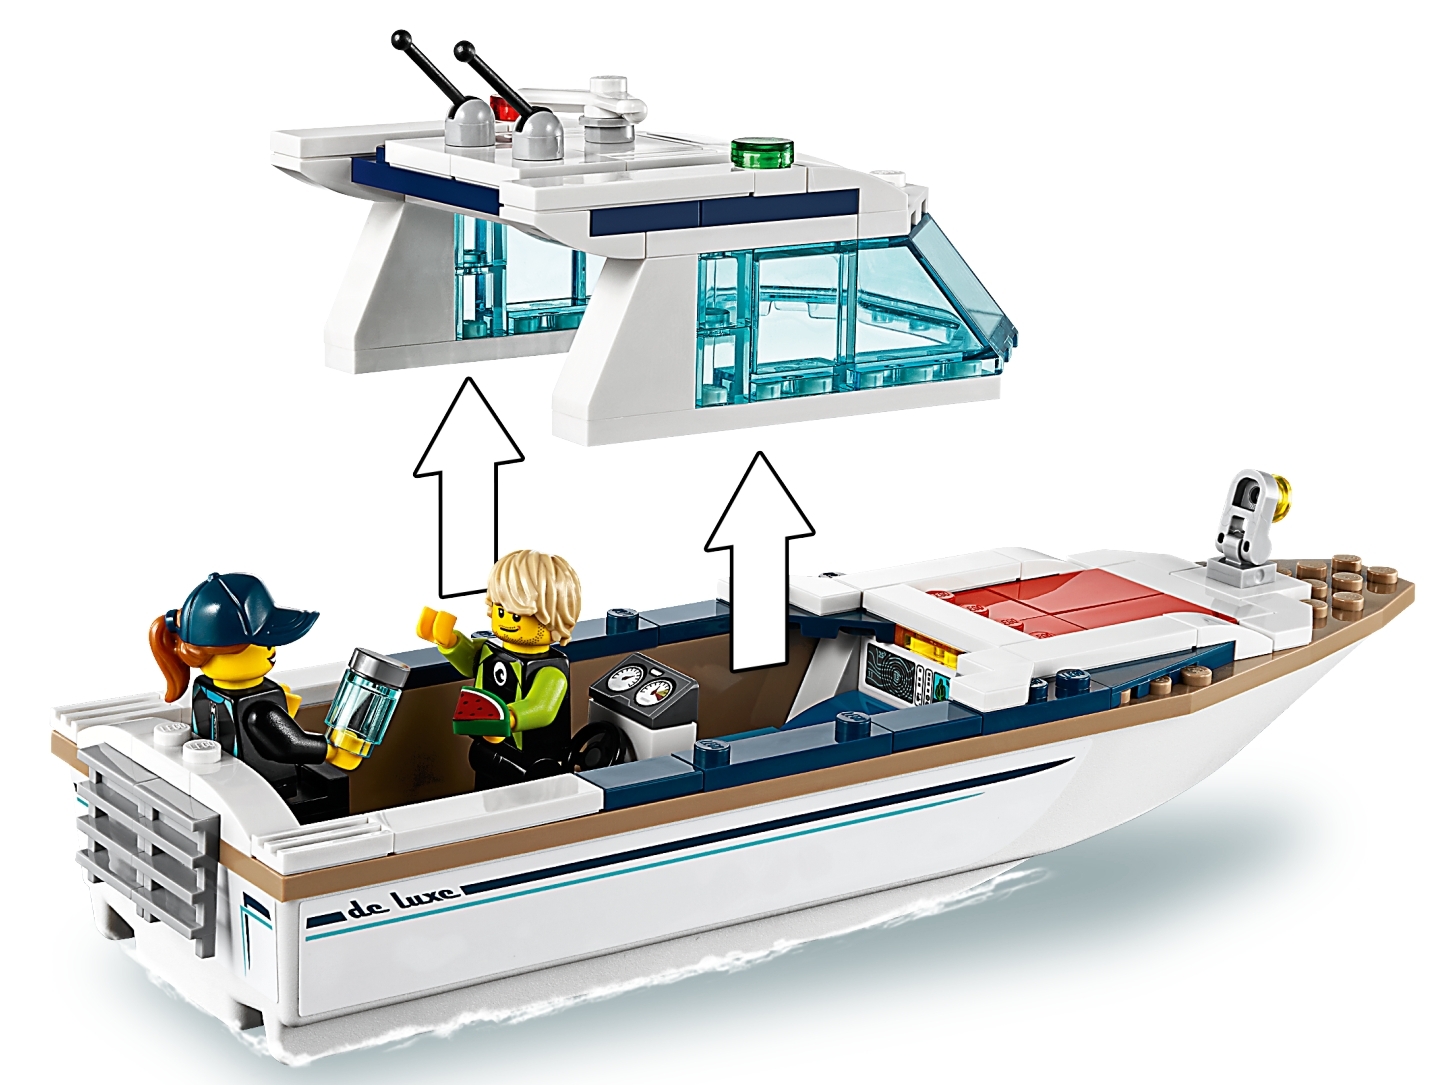 LEGO 60221 City Tauchyacht, Spielzeug mit 2 Taucher-Minifiguren, Meerestieren 